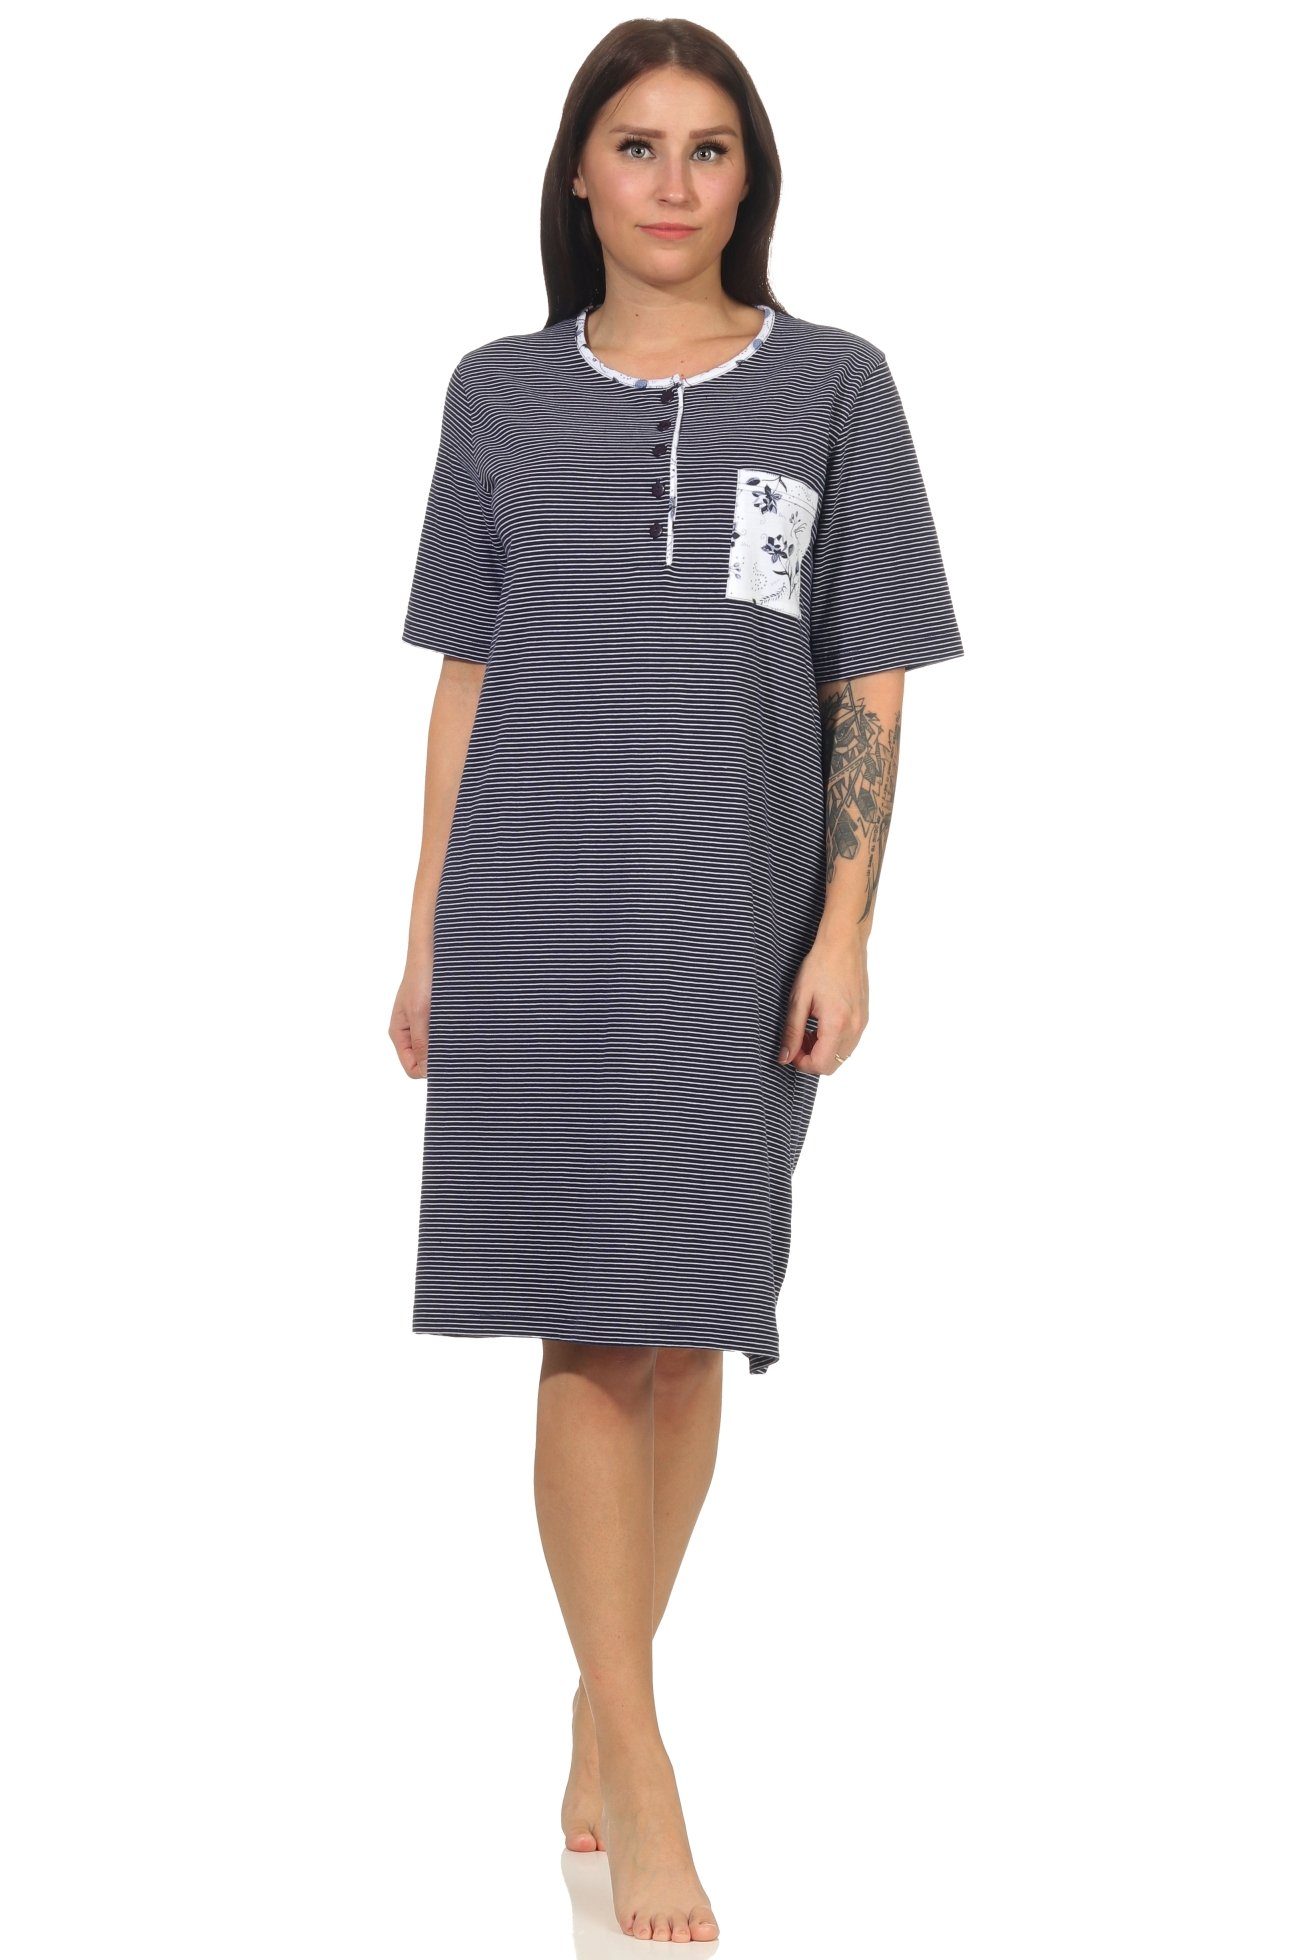 Normann Nachthemd Damen Nachthemd mit kurzen Ärmeln in feiner Streifen Optik marine